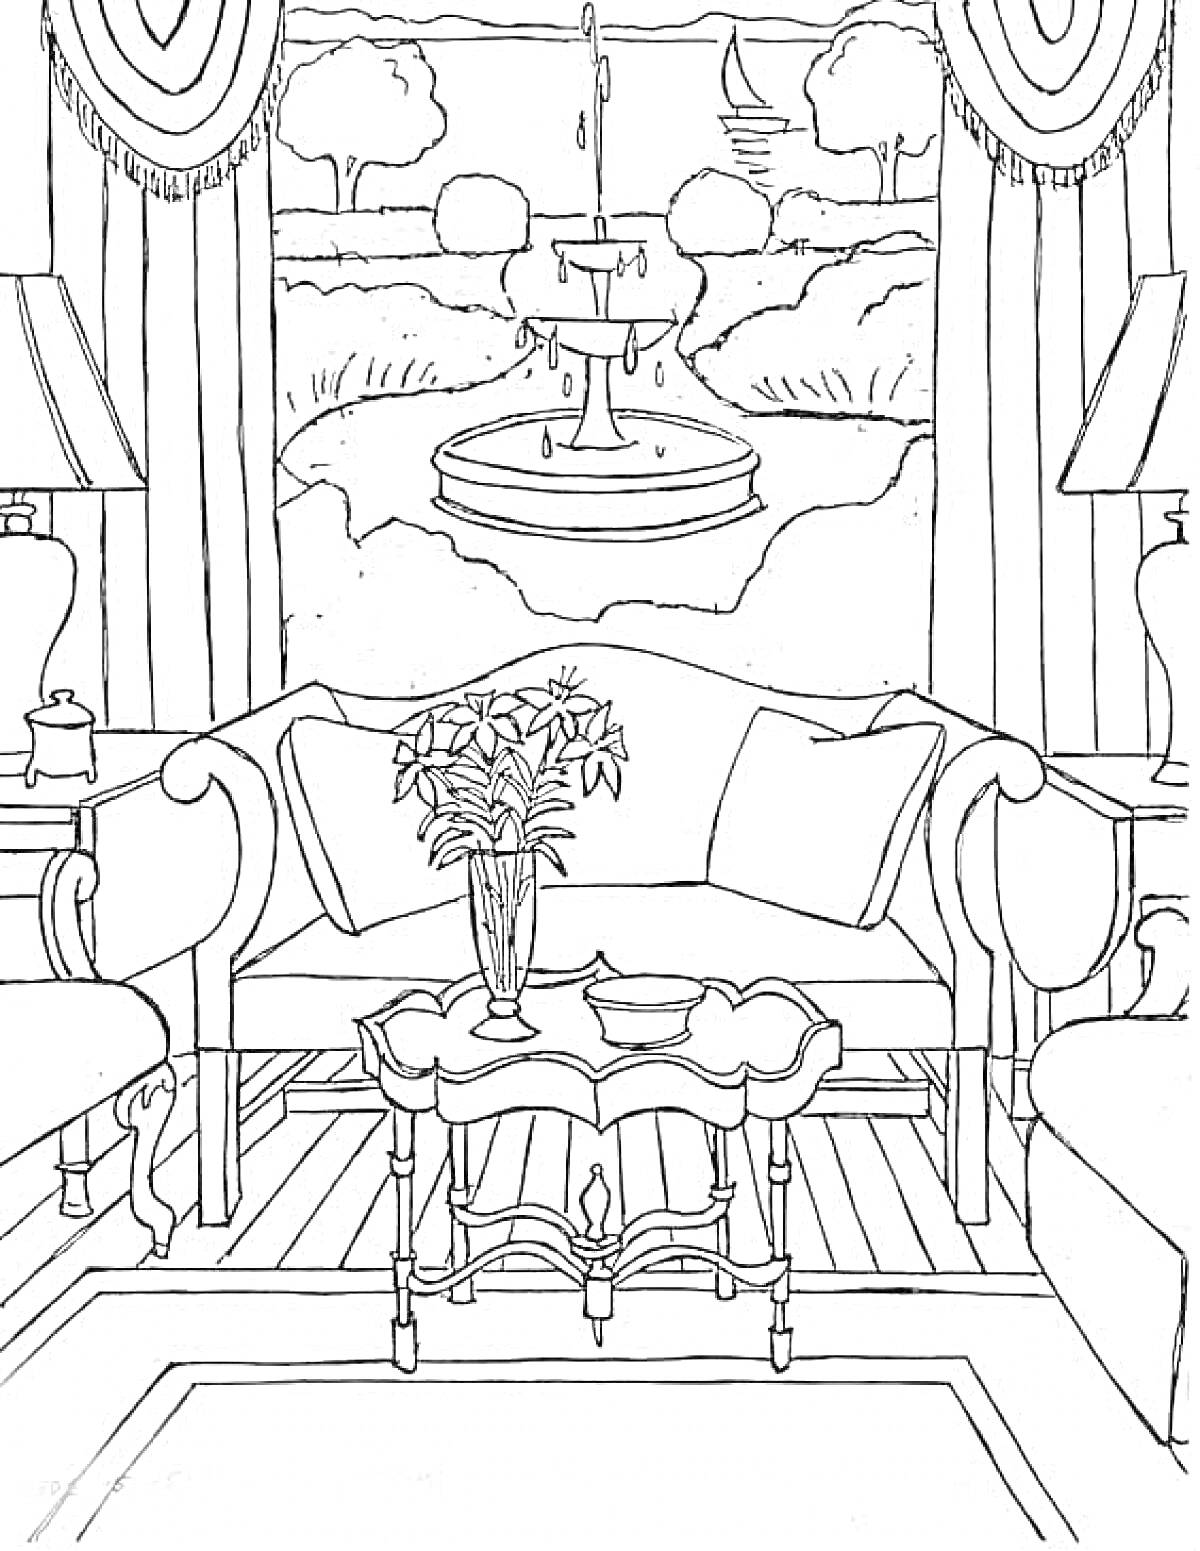 Гостиная с диваном, торшерами, кофейным столиком и вазой с цветами, с видом на сад и фонтан за окном